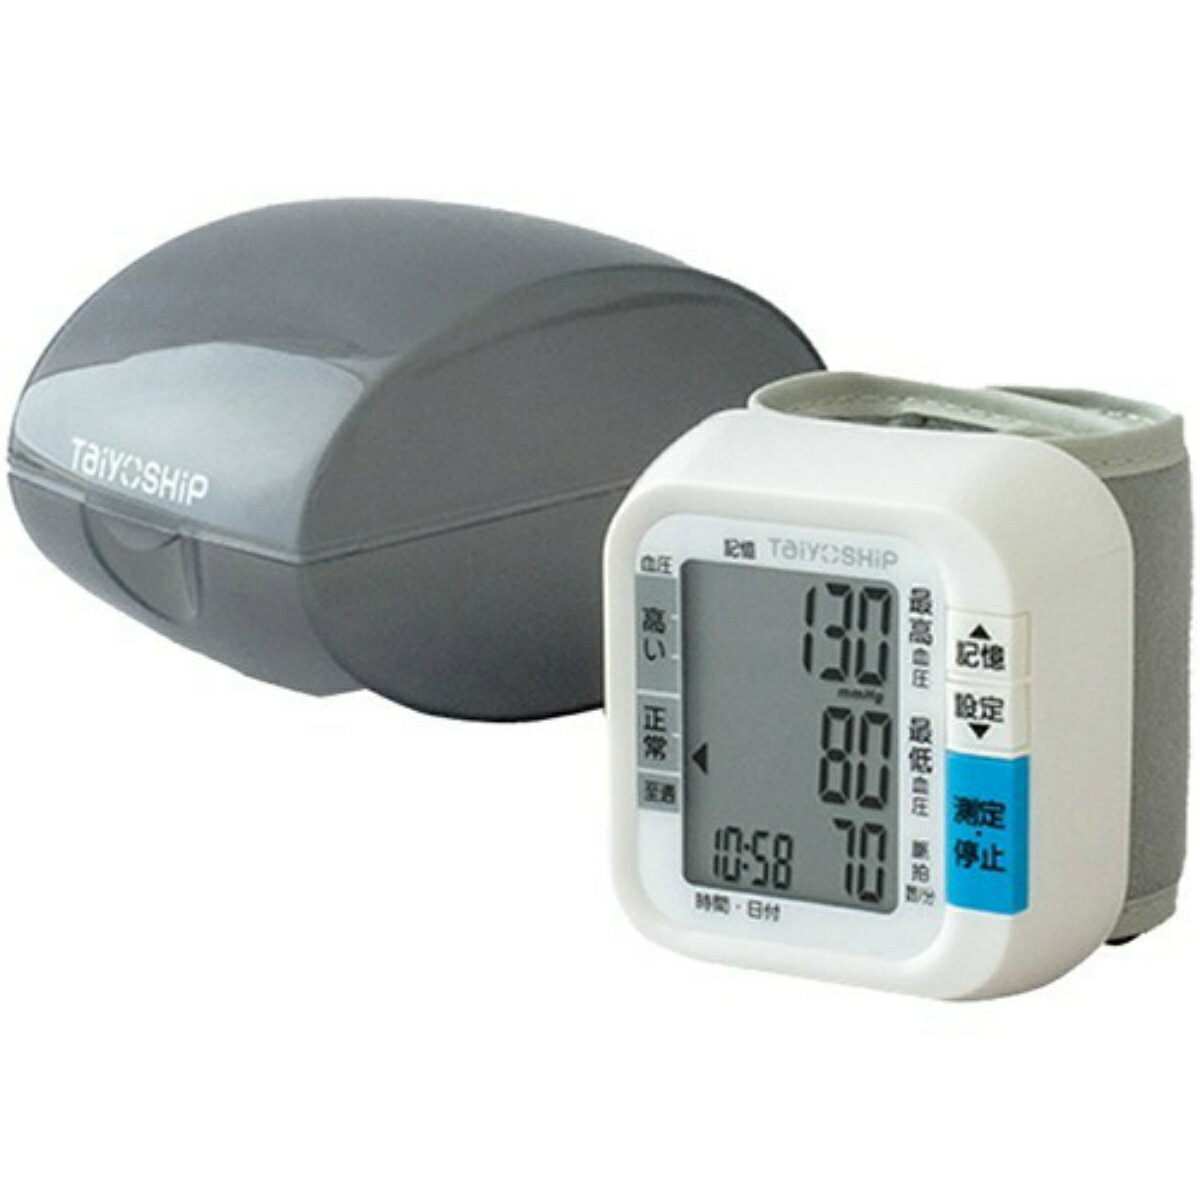 血圧計 【送料込み】ドリテック TaiyOSHiP 手首式の血圧計 WB-10　手首式だから、手軽に測れる (4975175038522 )血圧値6段階表示機能付き